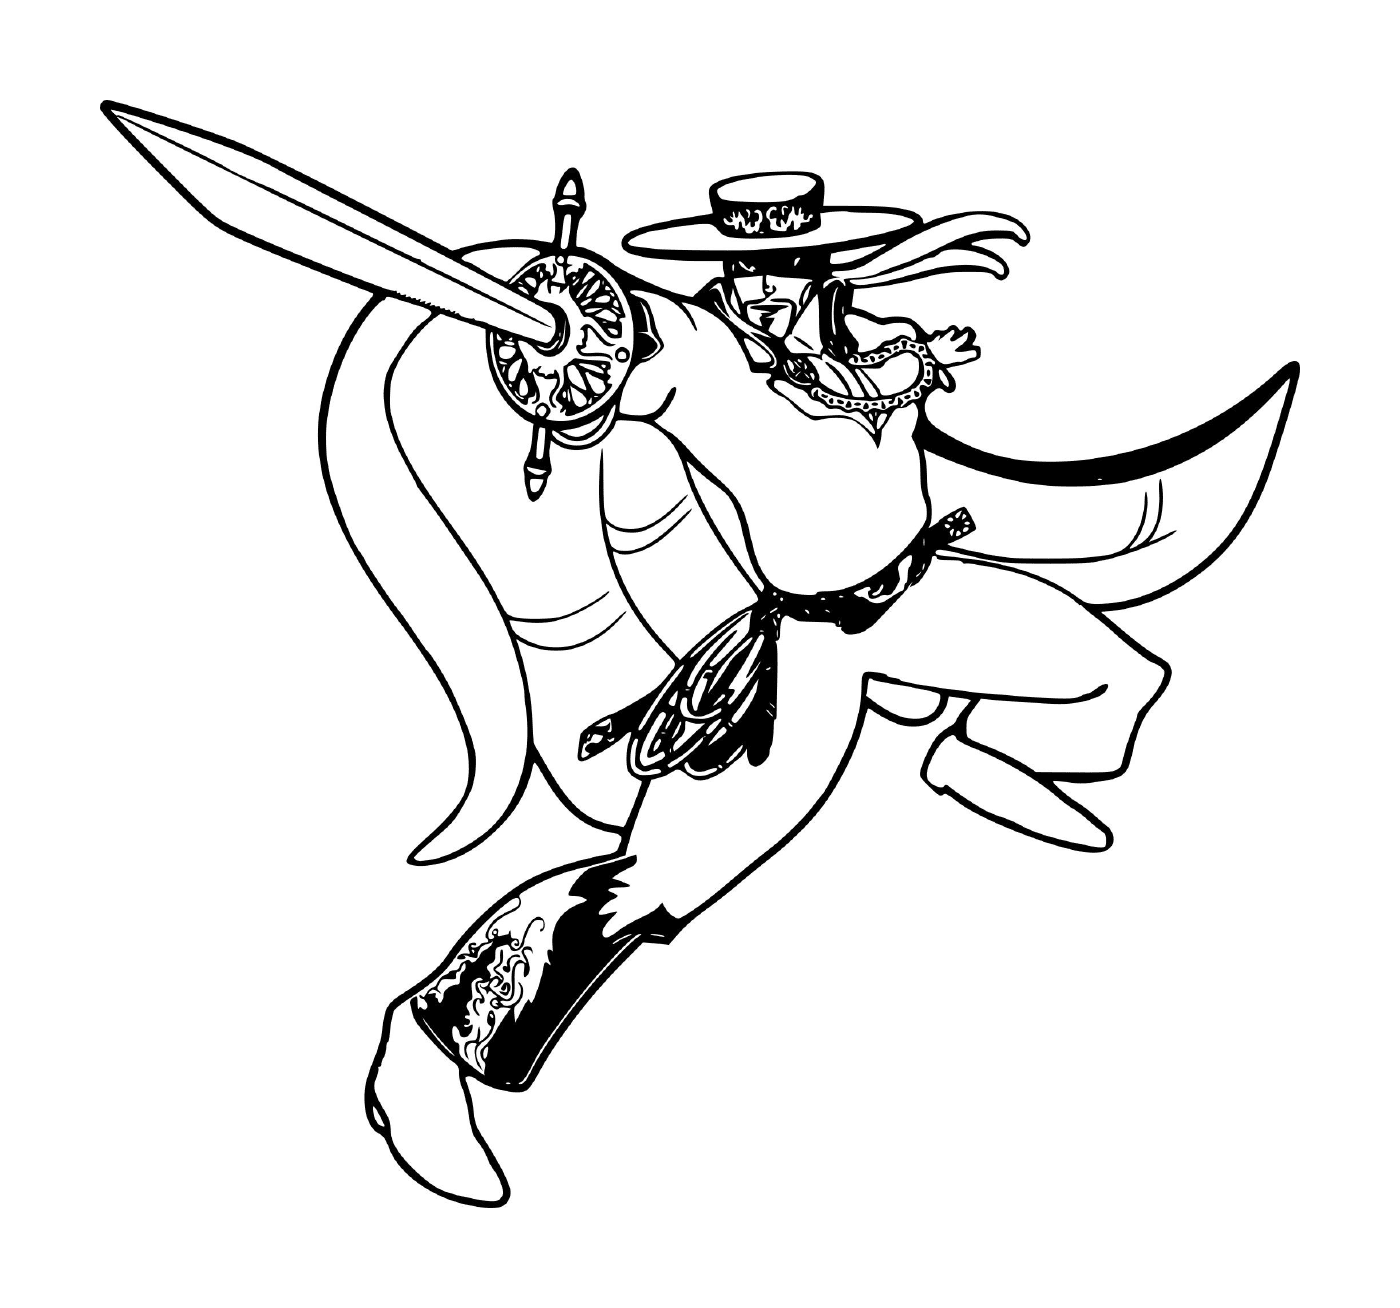  Zorro a raposa vigilante mascarado segurando uma espada 